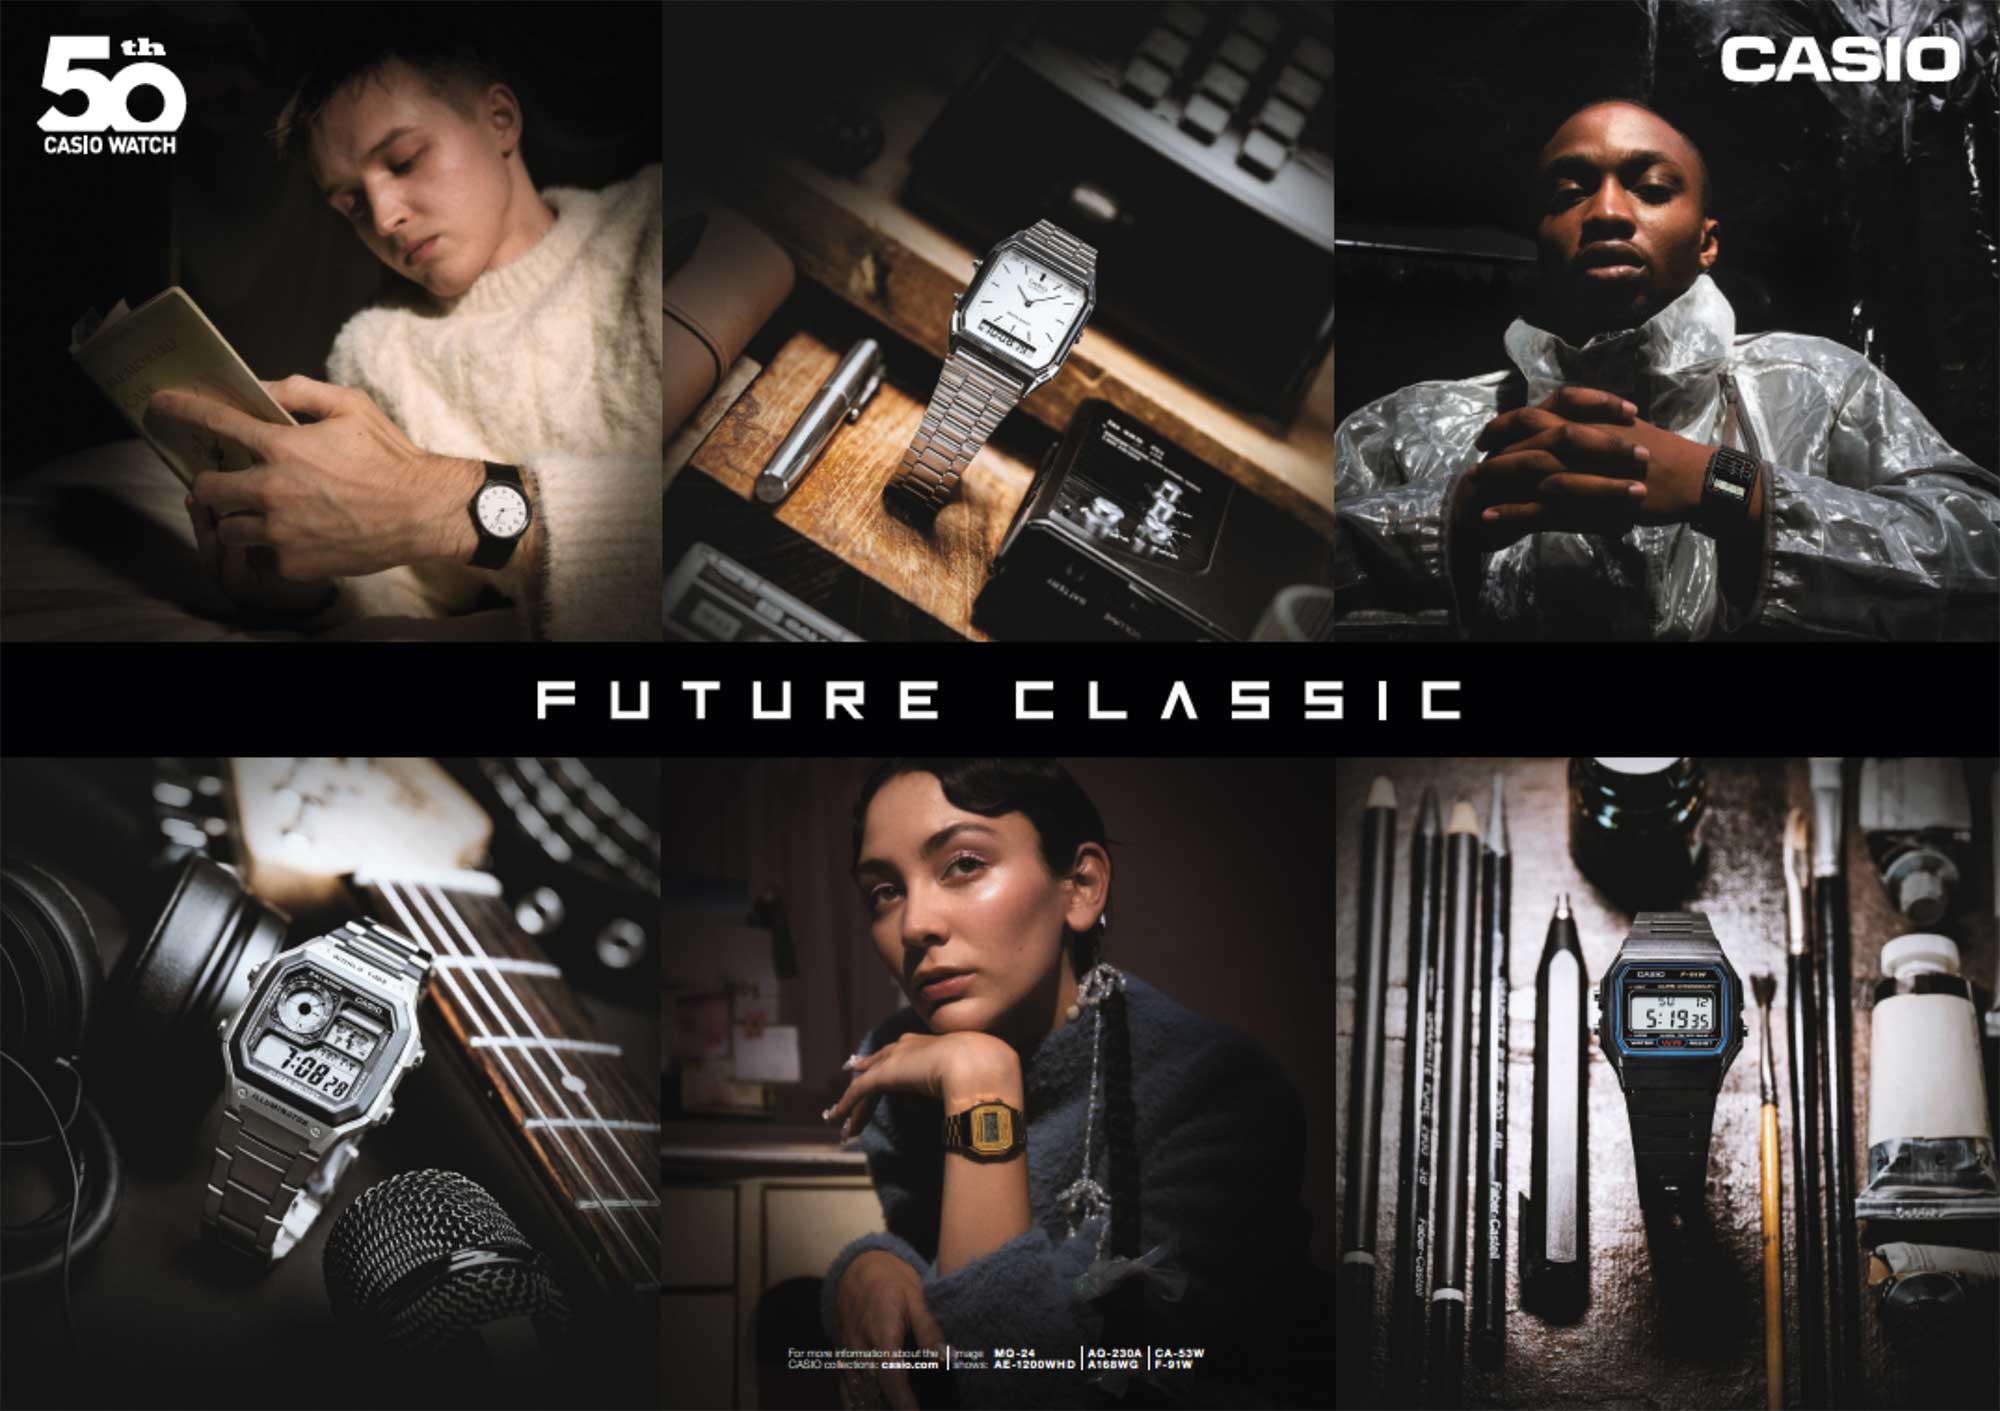 Meistverkaufte Uhren aller Zeiten - Casio feiert 50 Jahre Uhren mit seinen Design Klassikern 